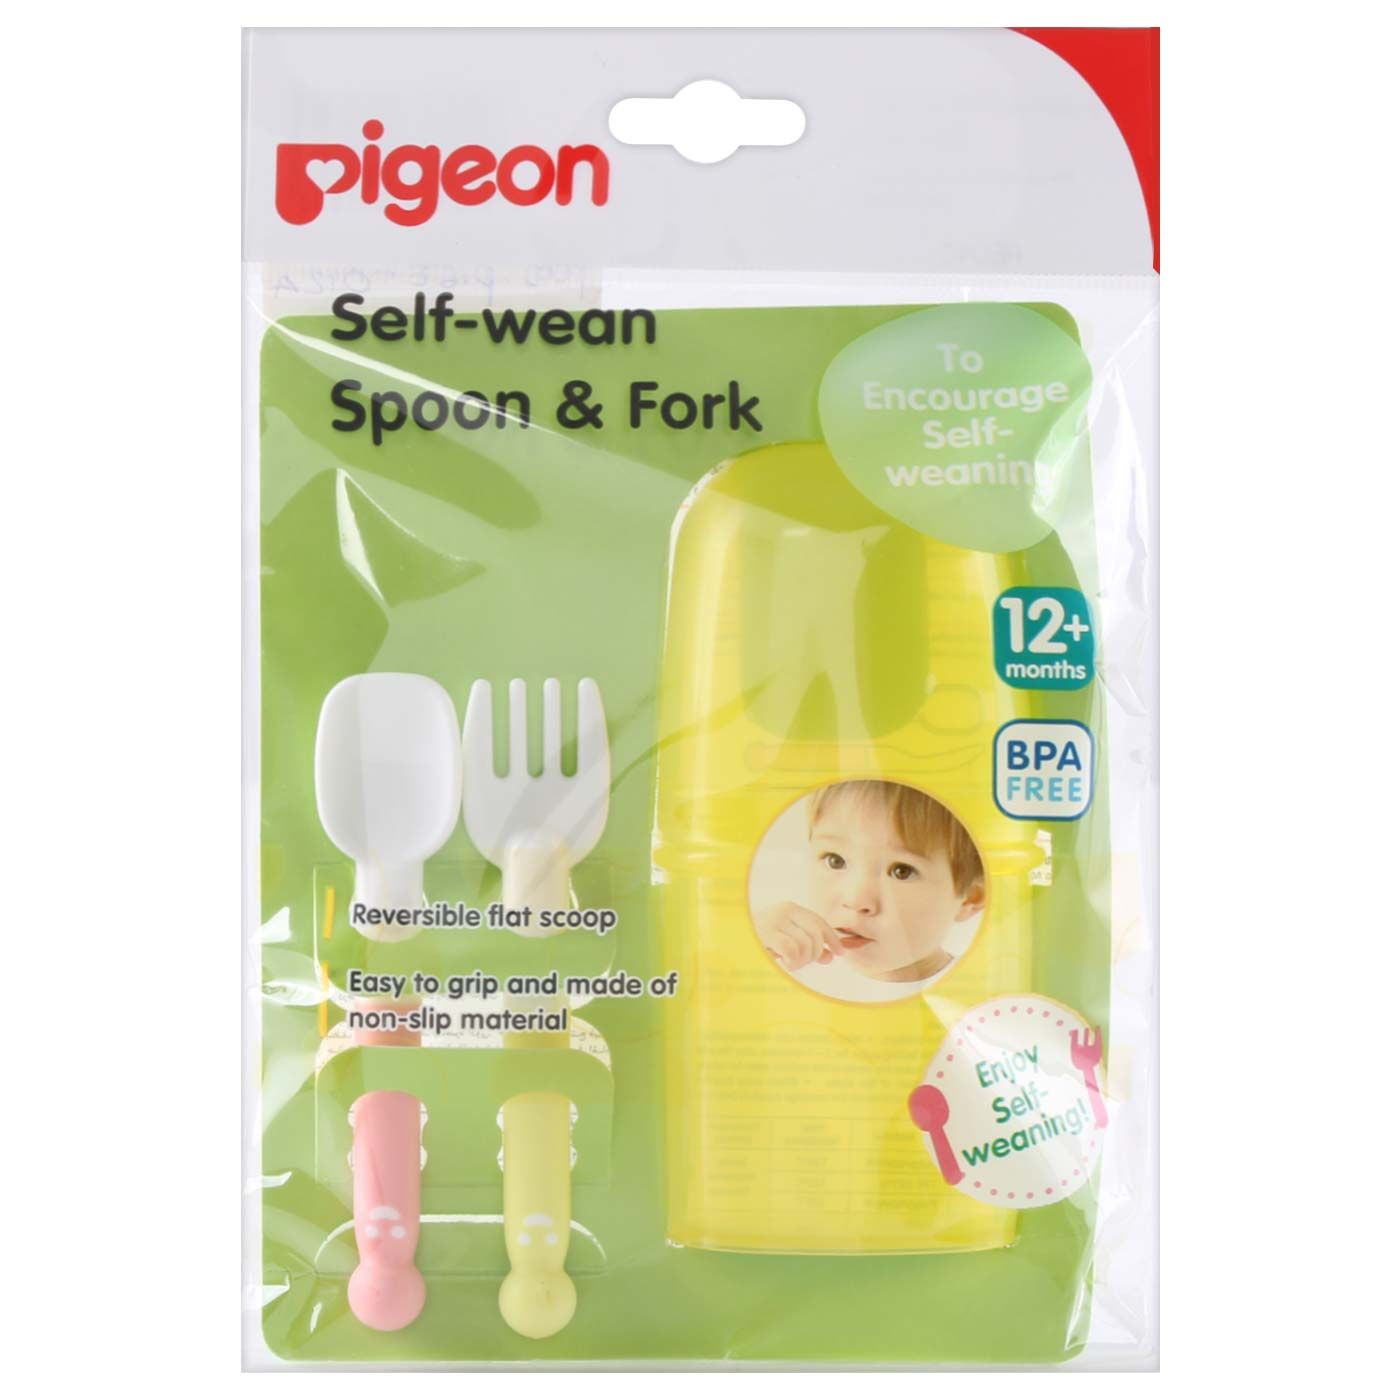 Pigeon Self Wean Spoon & Fork - 1